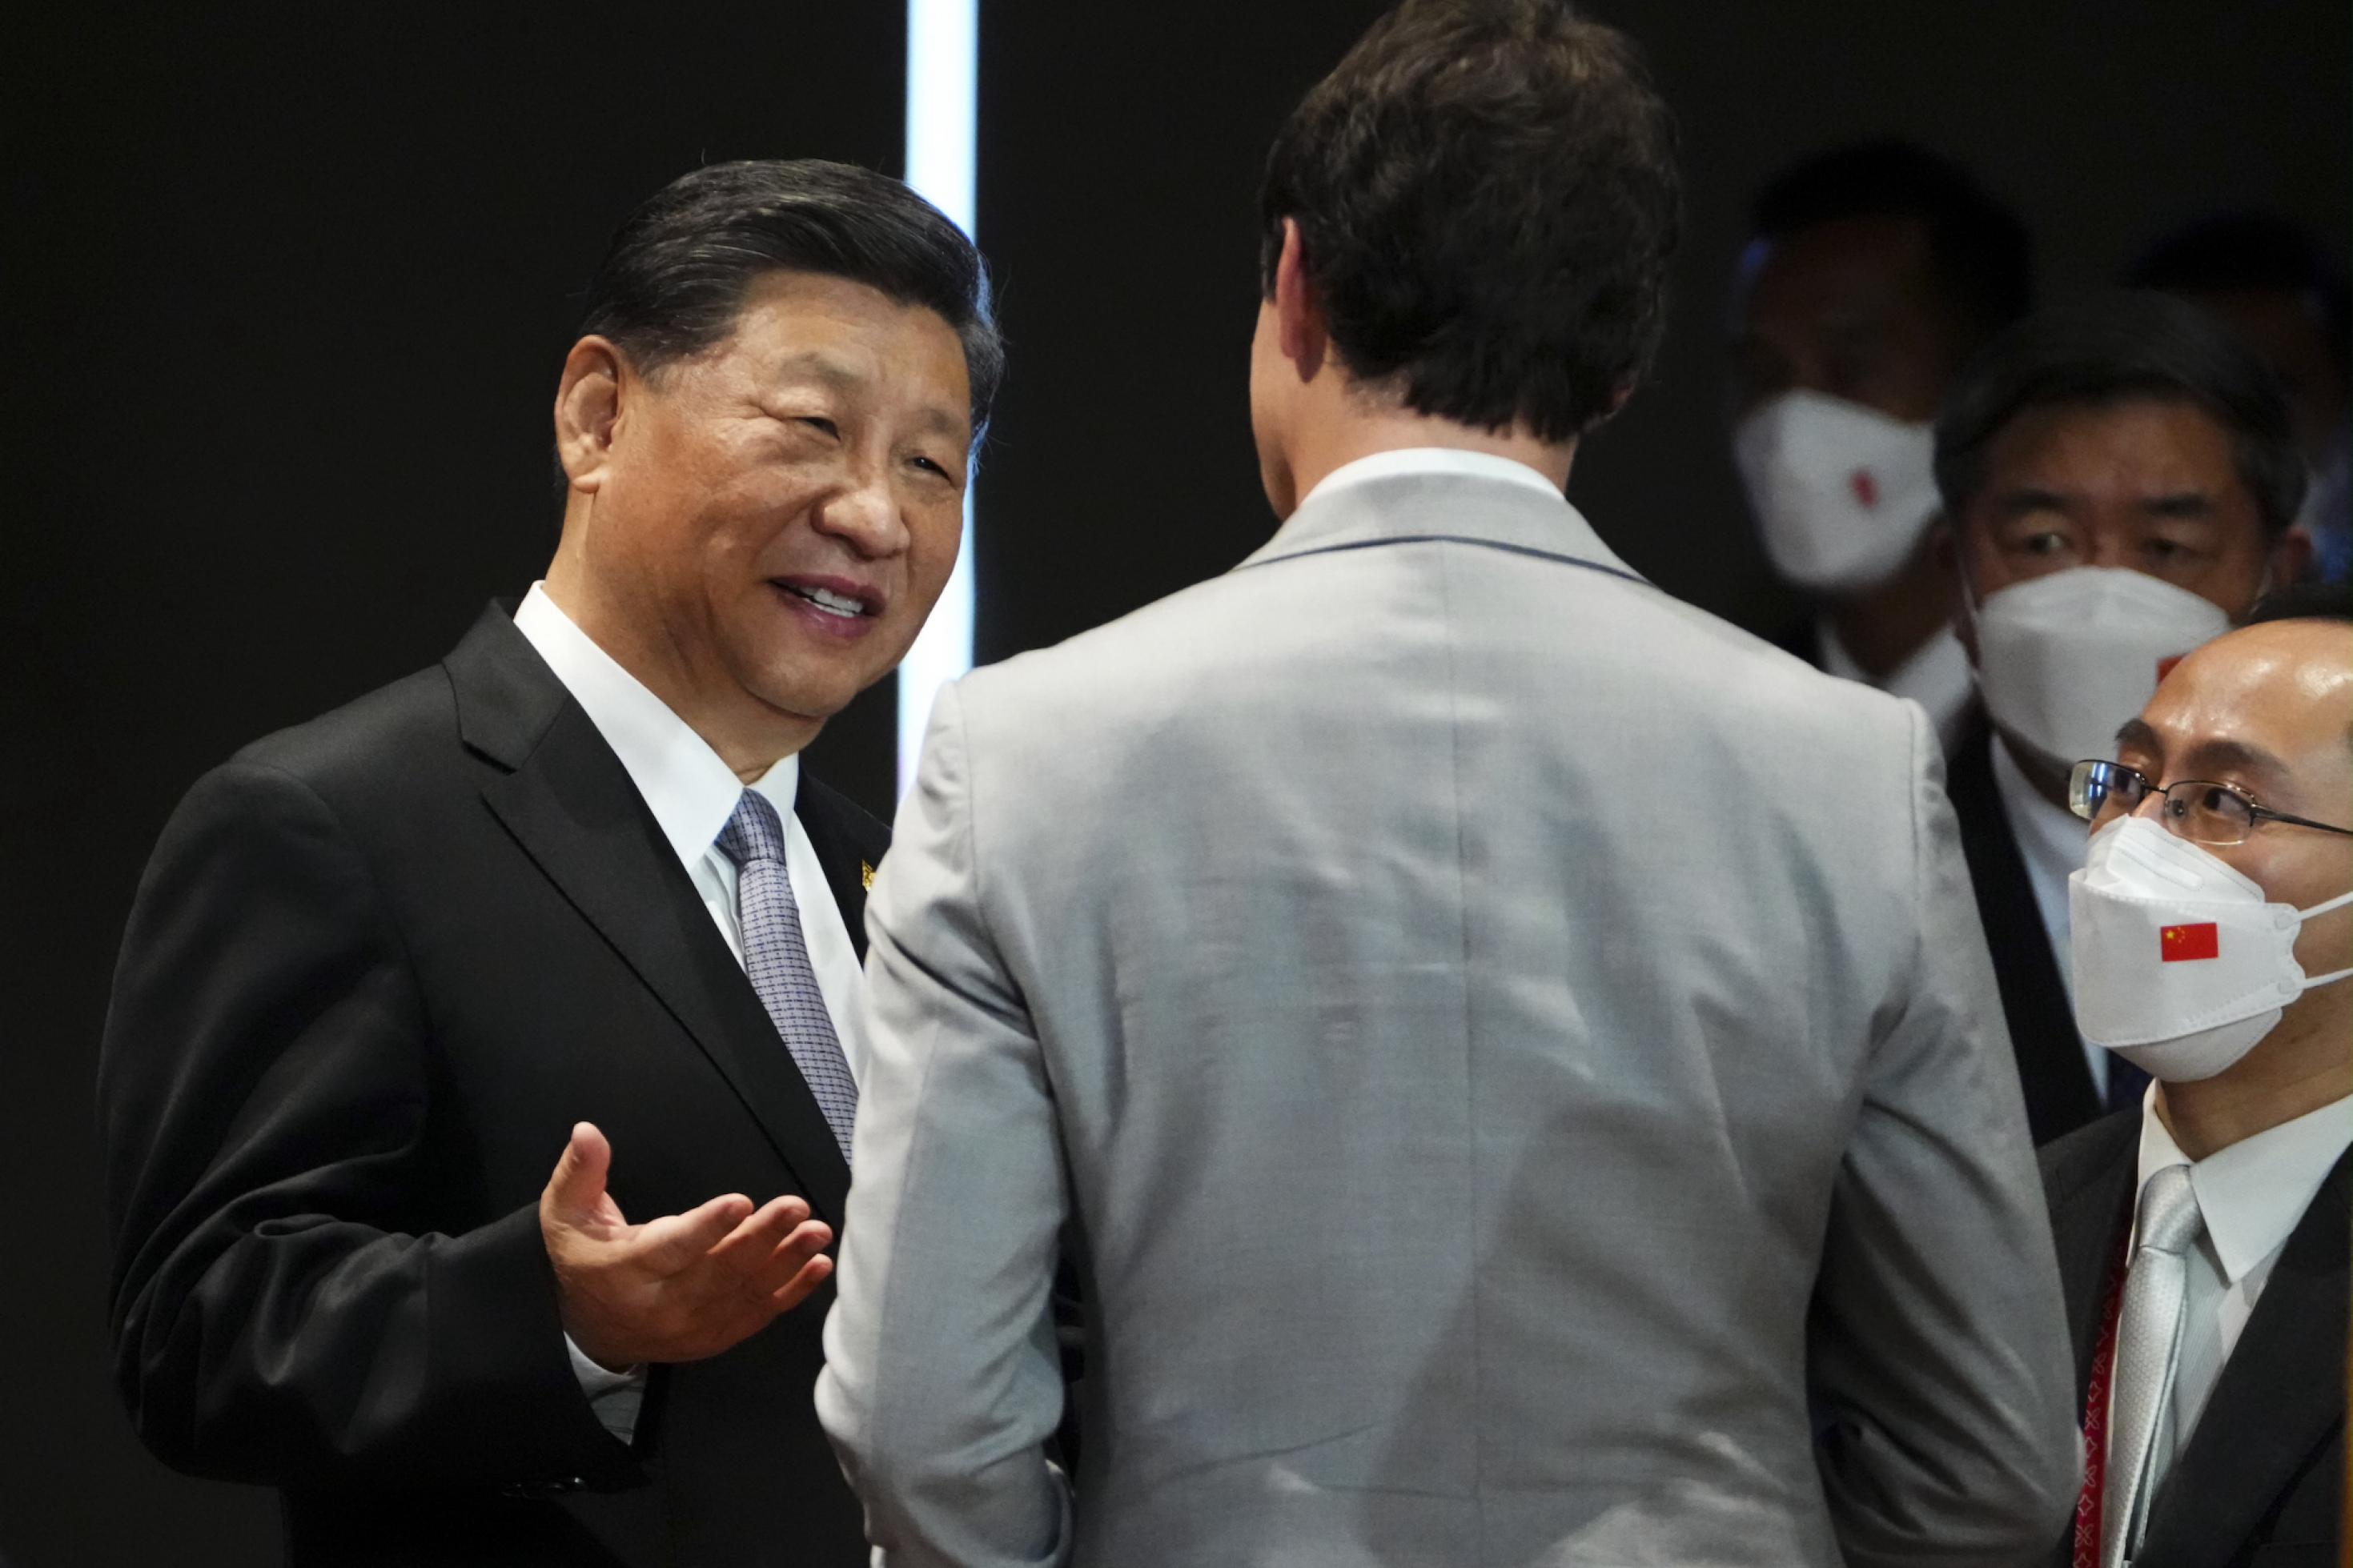 Xi und Trudeau auf einer Bühne, Xi spricht auf sein Gegenüber ein